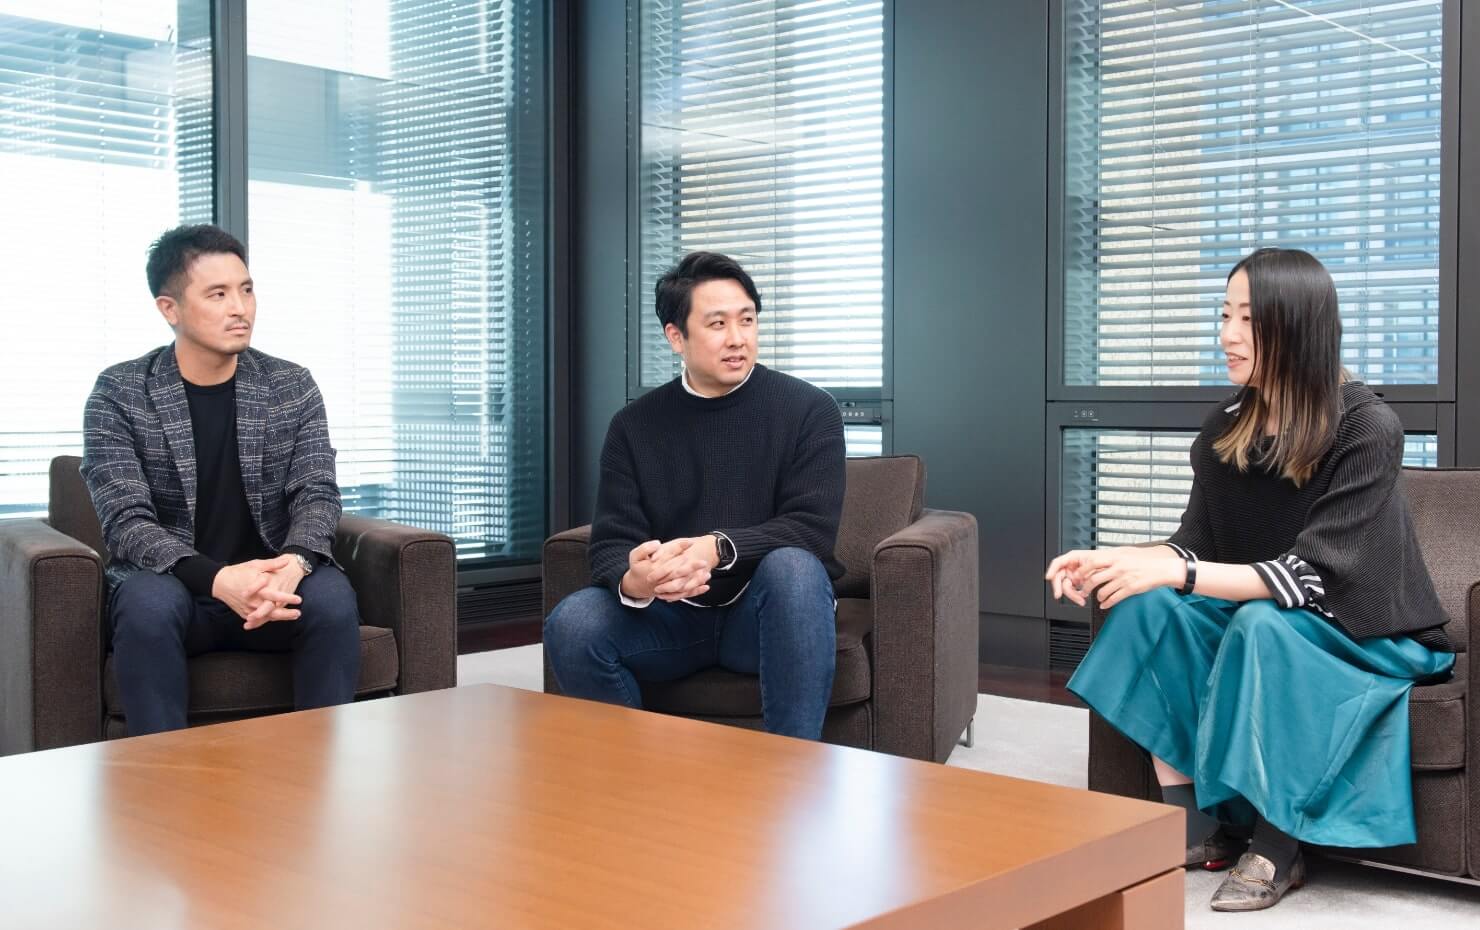 SMBCさまオフィスでのインタビュー中の写真。向かって左からコンセント大崎、SMBC金澤氏、コンセント石井の順番で座っている。